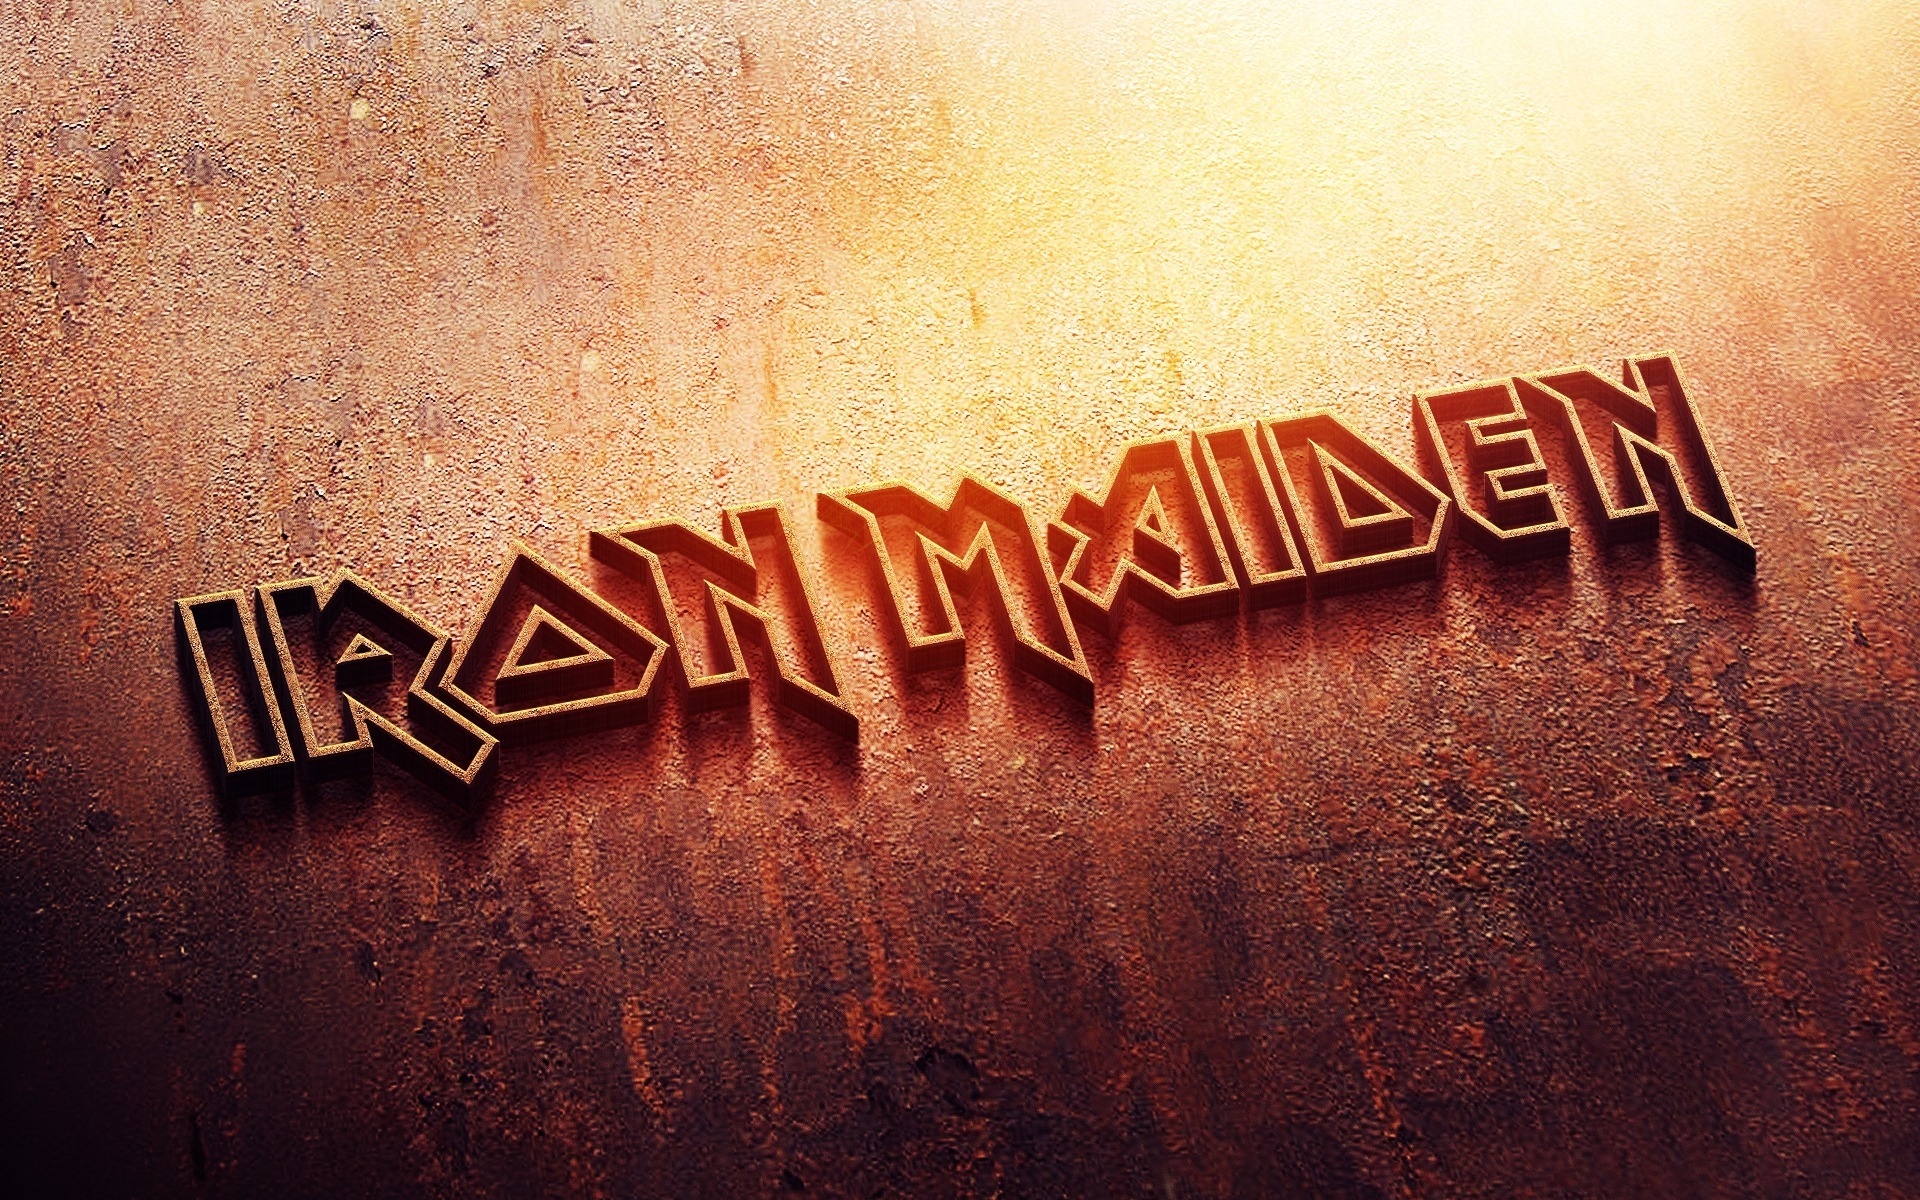 Iron Maiden Logo Hd Wallpaper Wallpaperfx